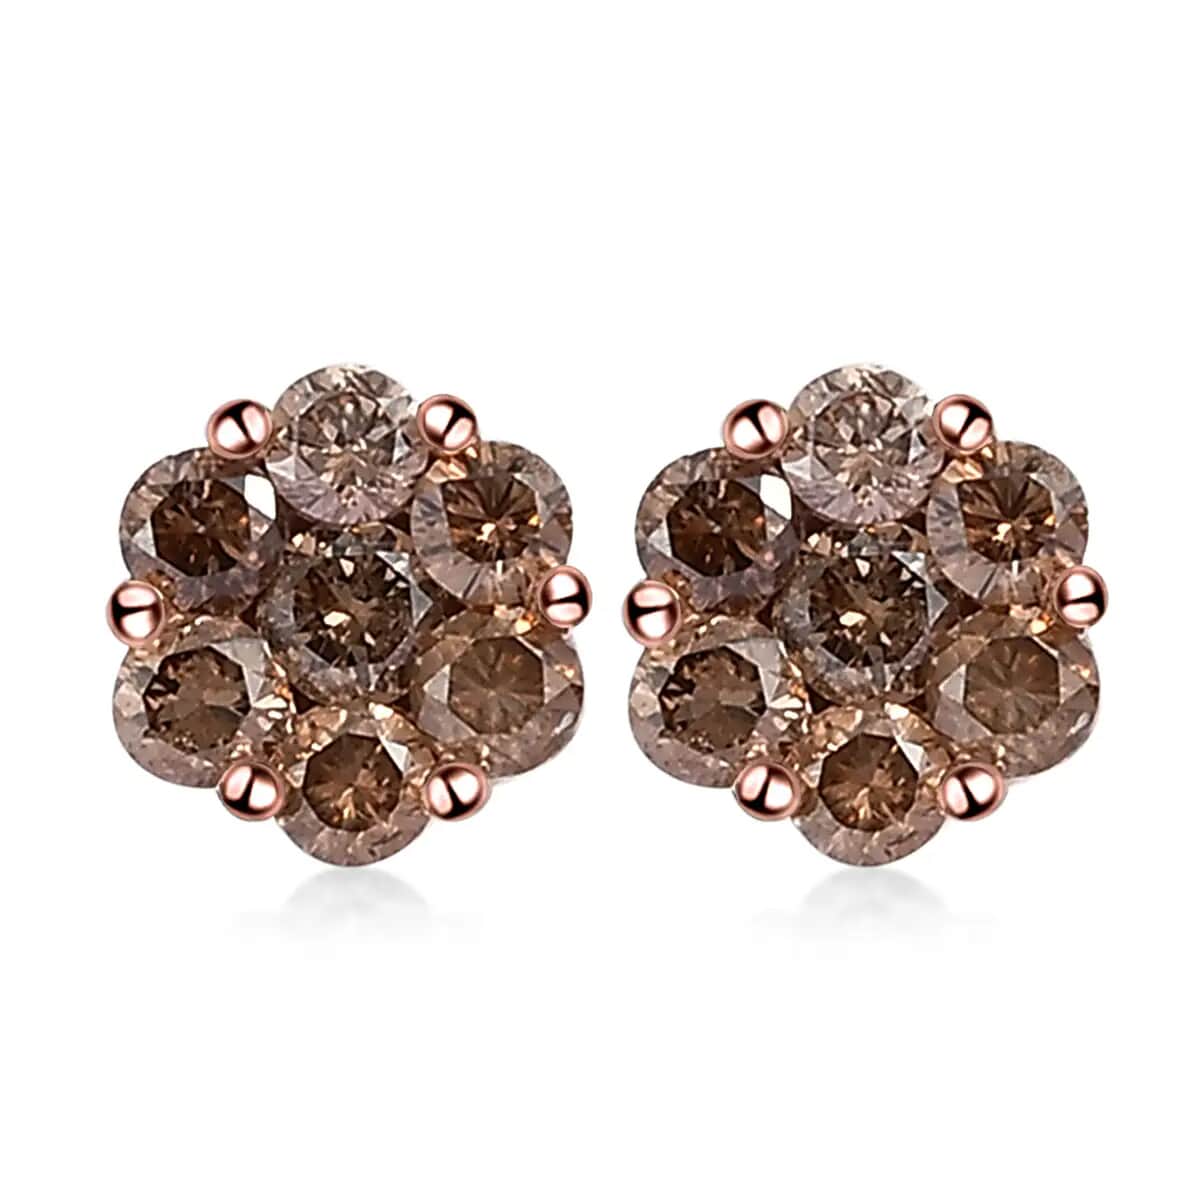 Buy Floral Stud Earrings Online in Australia - Jacque Fine Jewellery